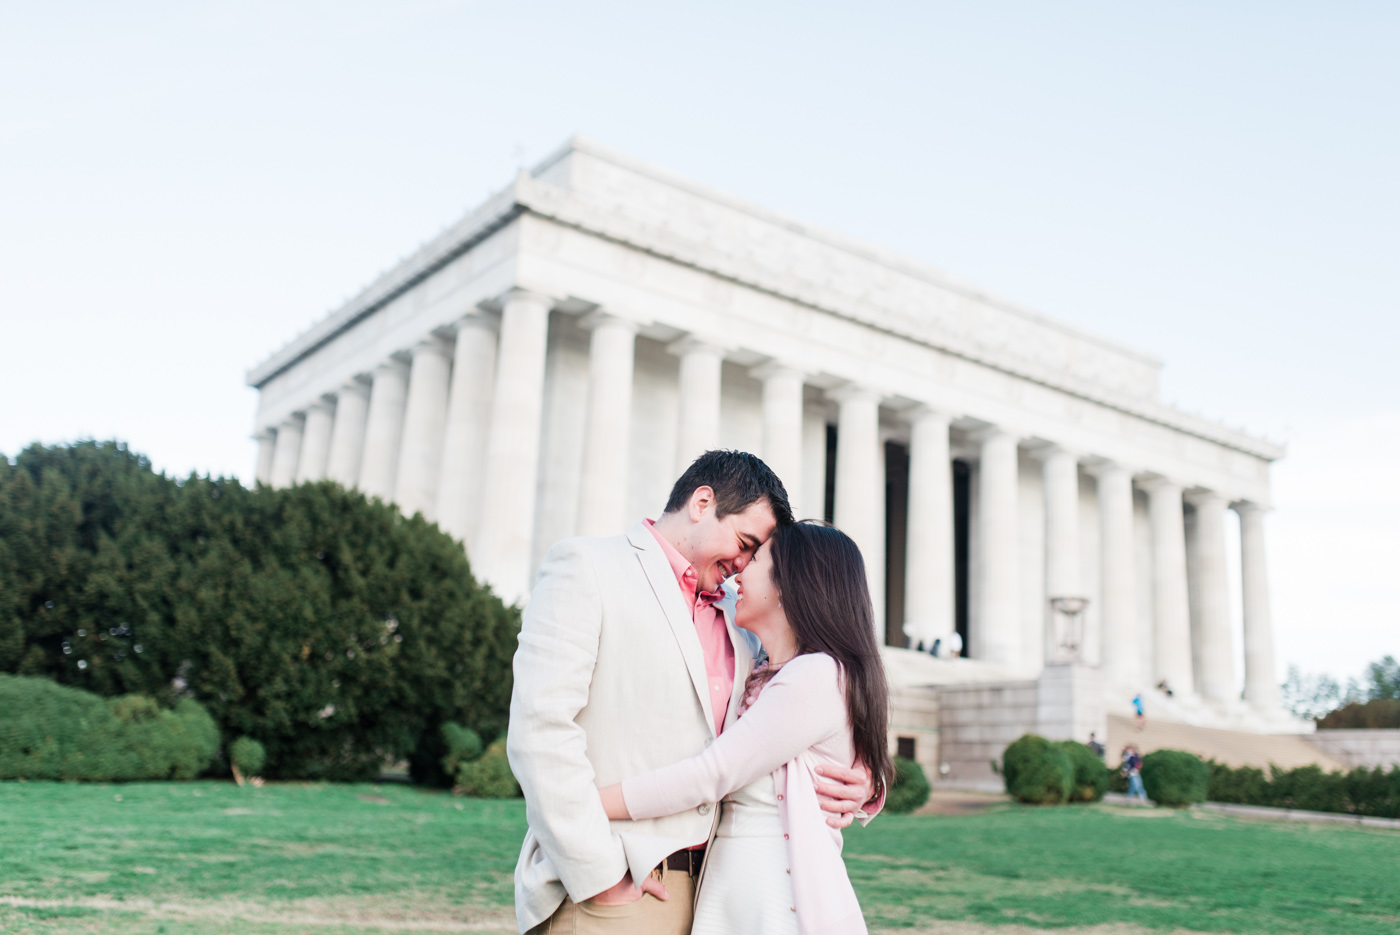 AJ + Yolinda - Washington DC Lincoln Memorial Engagement Session photo